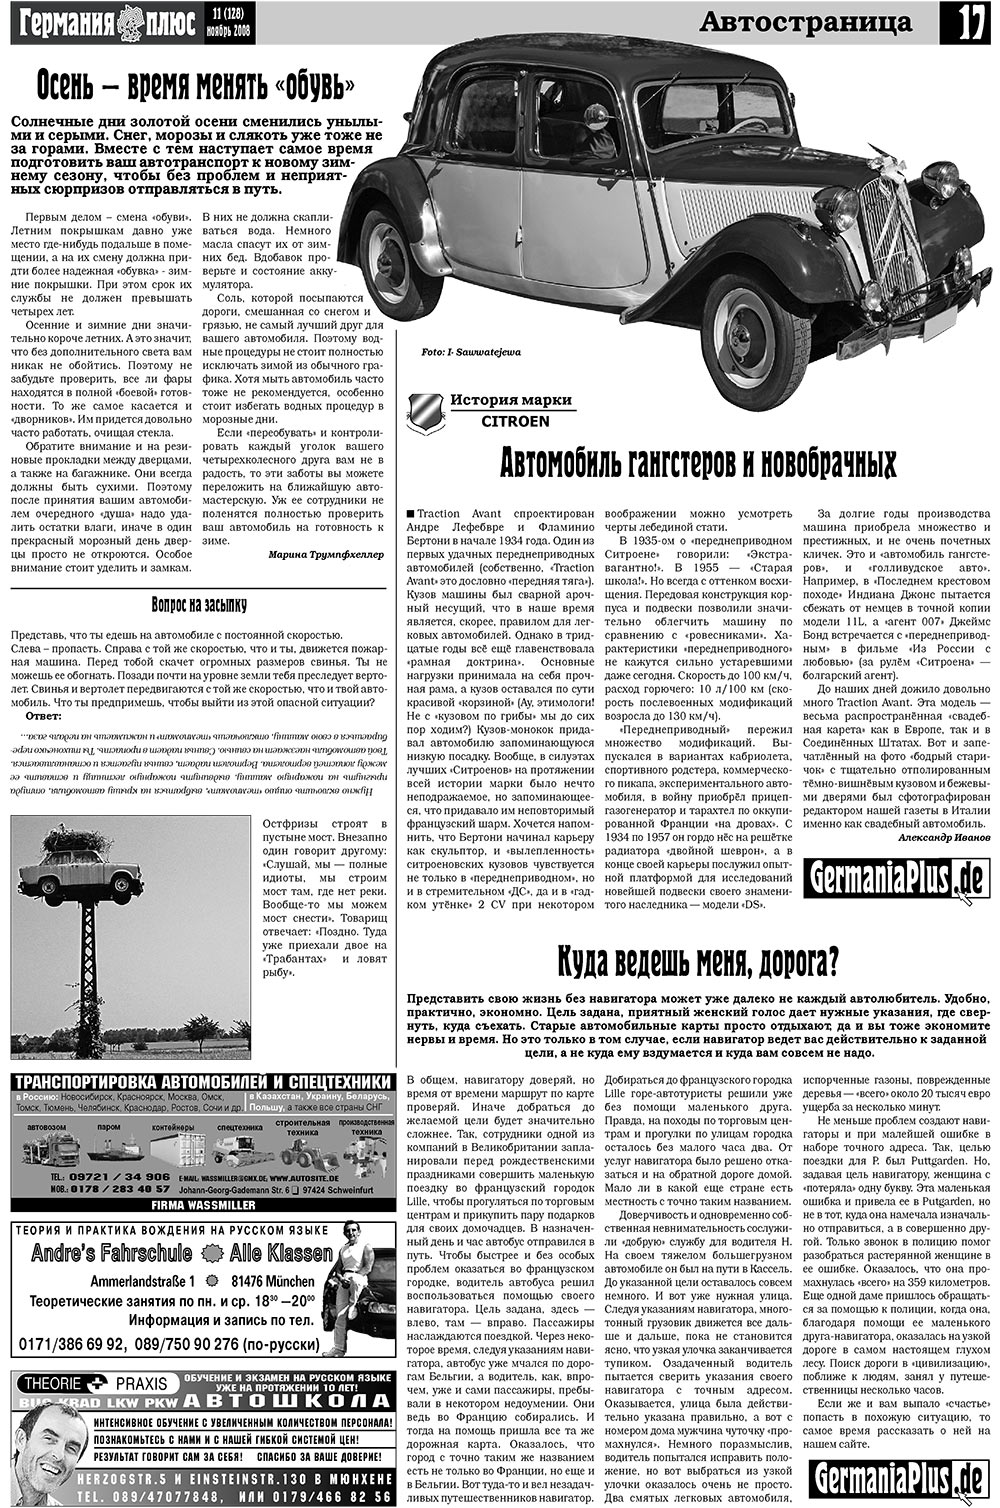 Германия плюс (газета). 2008 год, номер 11, стр. 19